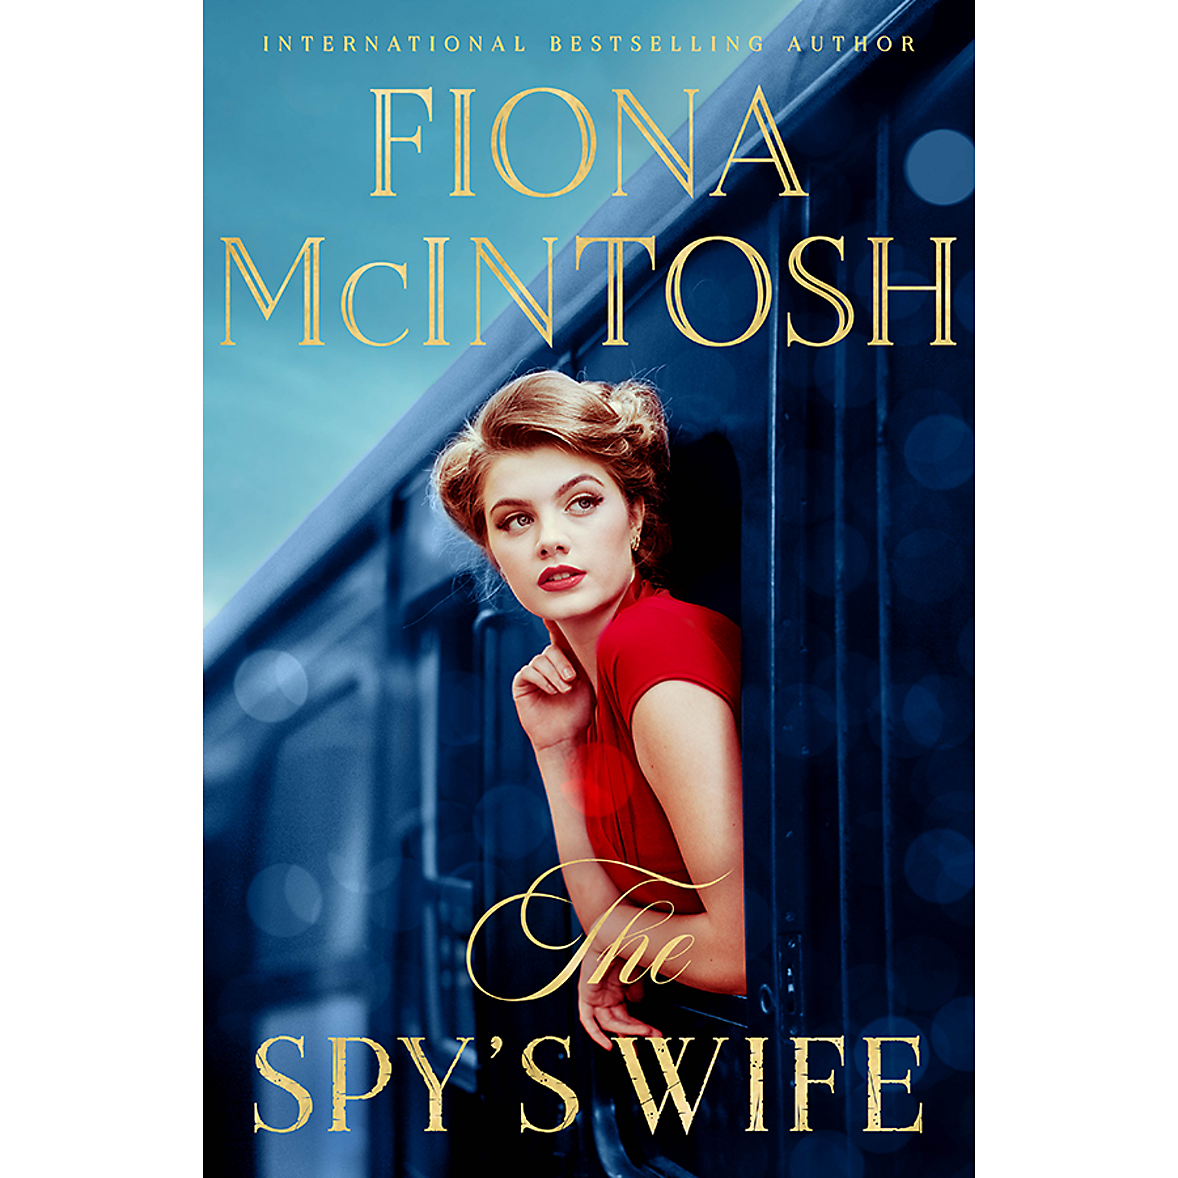 The Spy's Wife by Fiona McIntosh